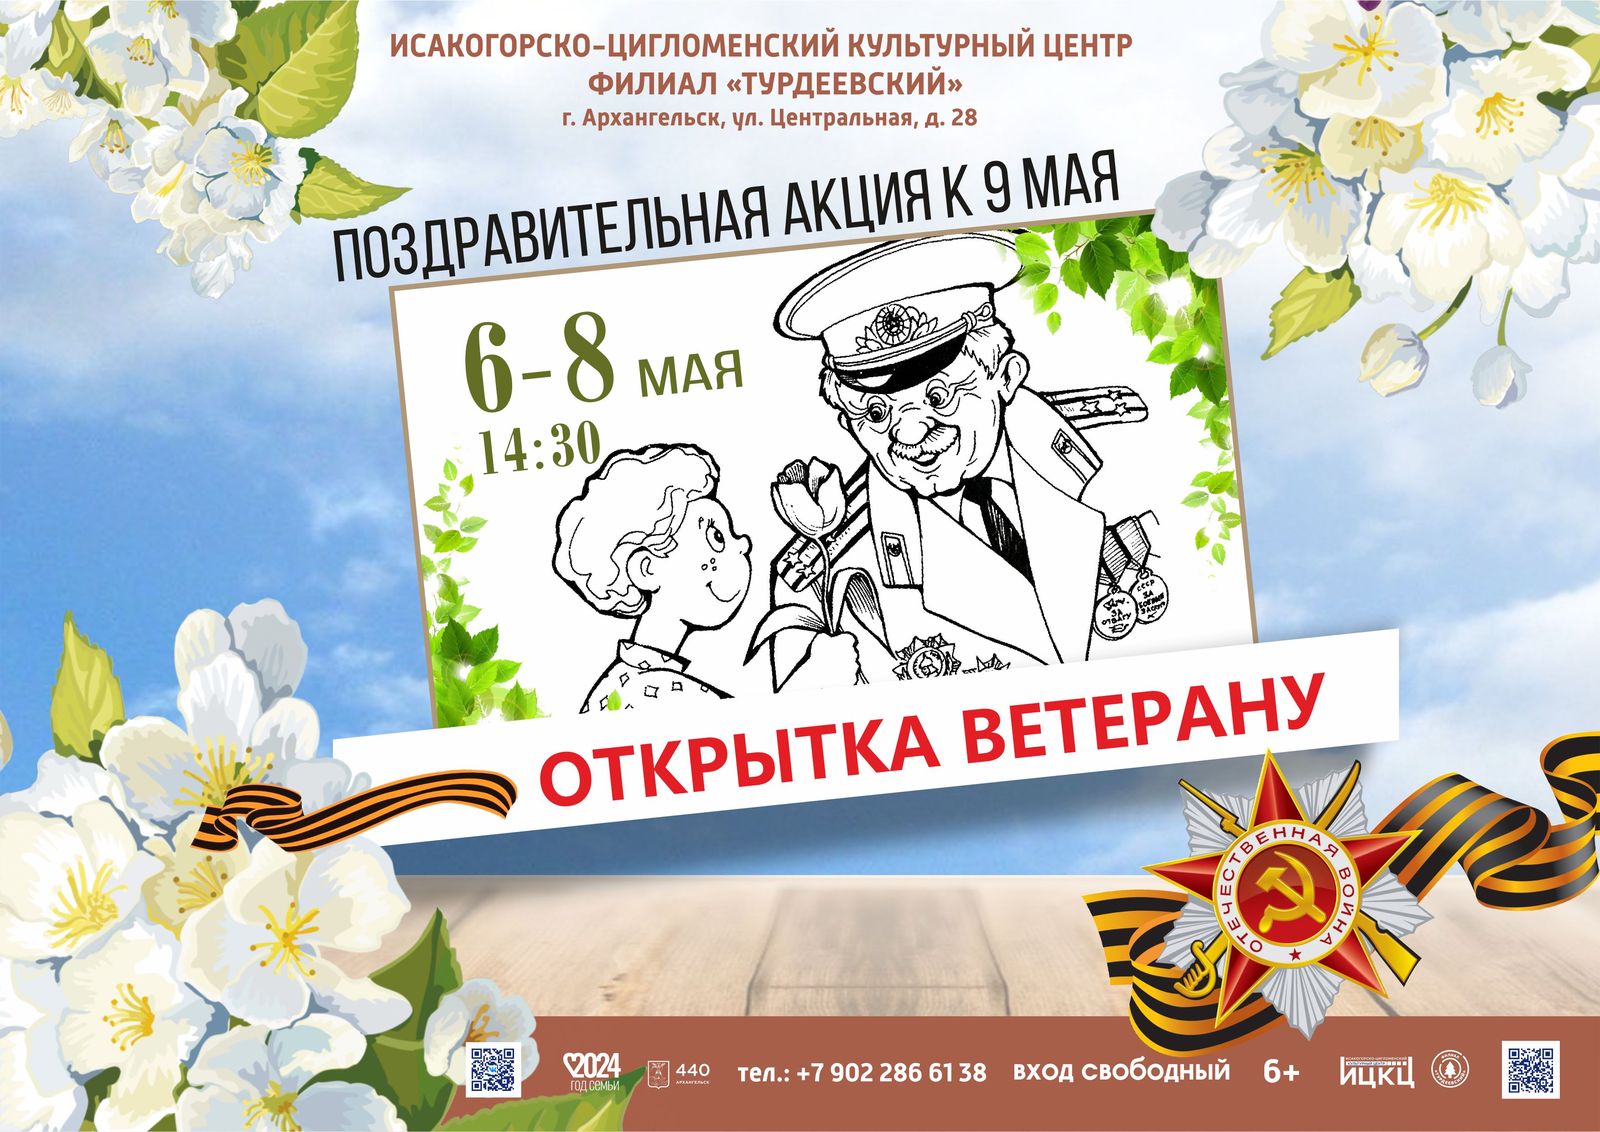 Поздравительная акция к 9 мая «Открытка ветерану»